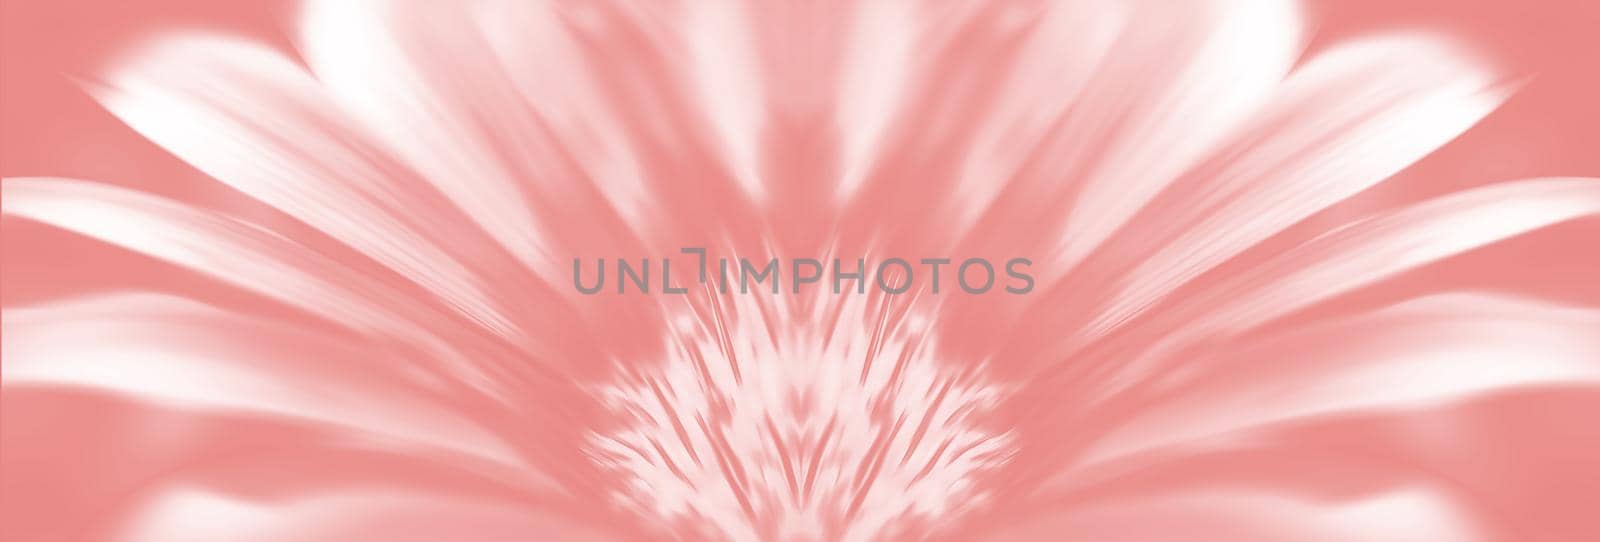 Blurred image of gerbera flowers by palinchak